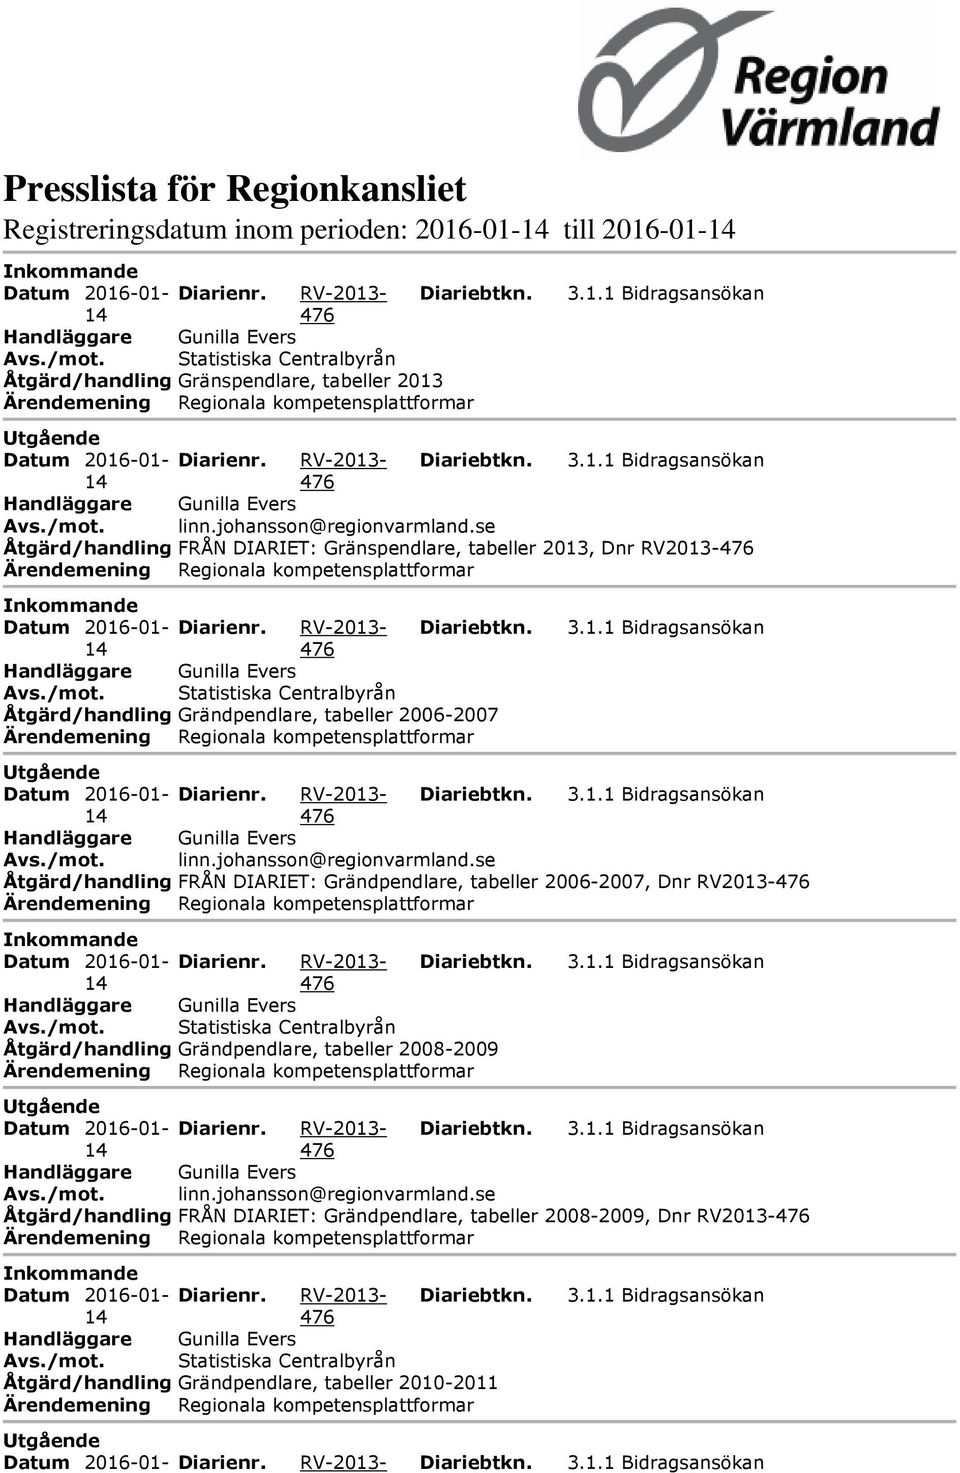 Åtgärd/handling FRÅN DIARIET: Grändpendlare, tabeller 2006-2007, Dnr RV2013- Åtgärd/handling Grändpendlare, tabeller 2008-2009